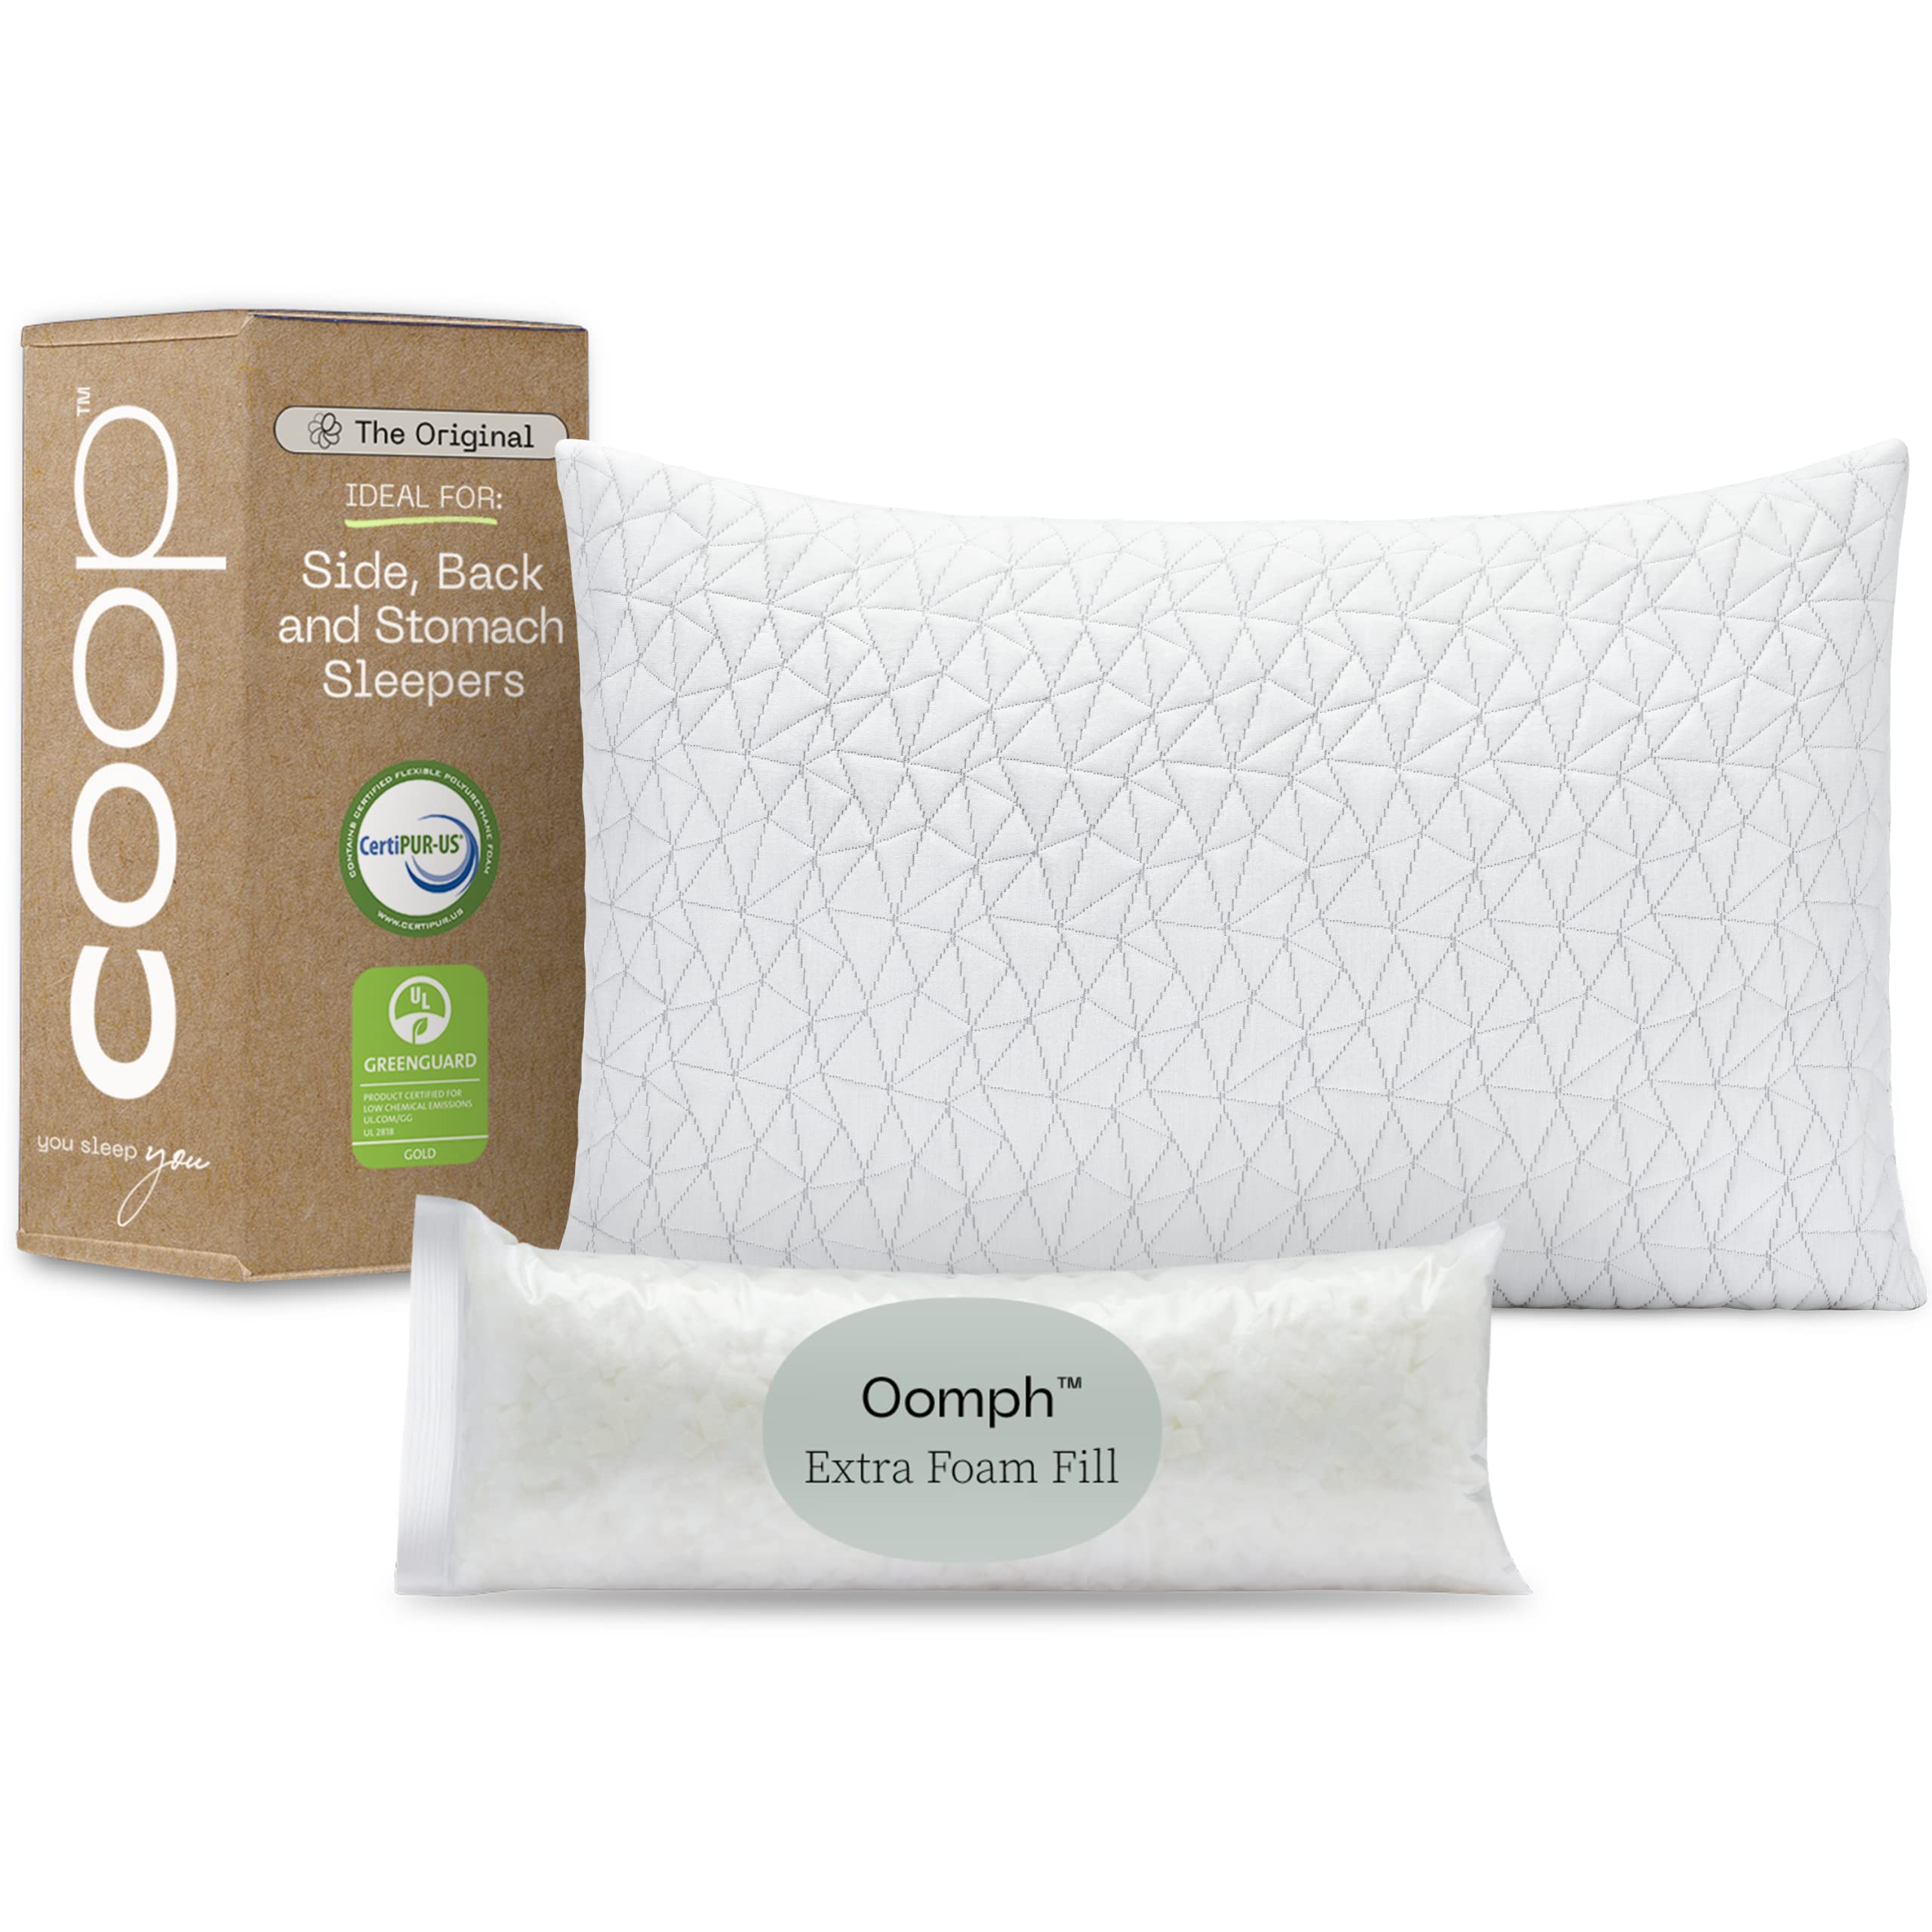 Coop Home Goods 原装阁楼床睡眠枕头 - 可调节十字切记忆海绵枕头 - 中等硬度的背枕、胃枕和侧睡枕